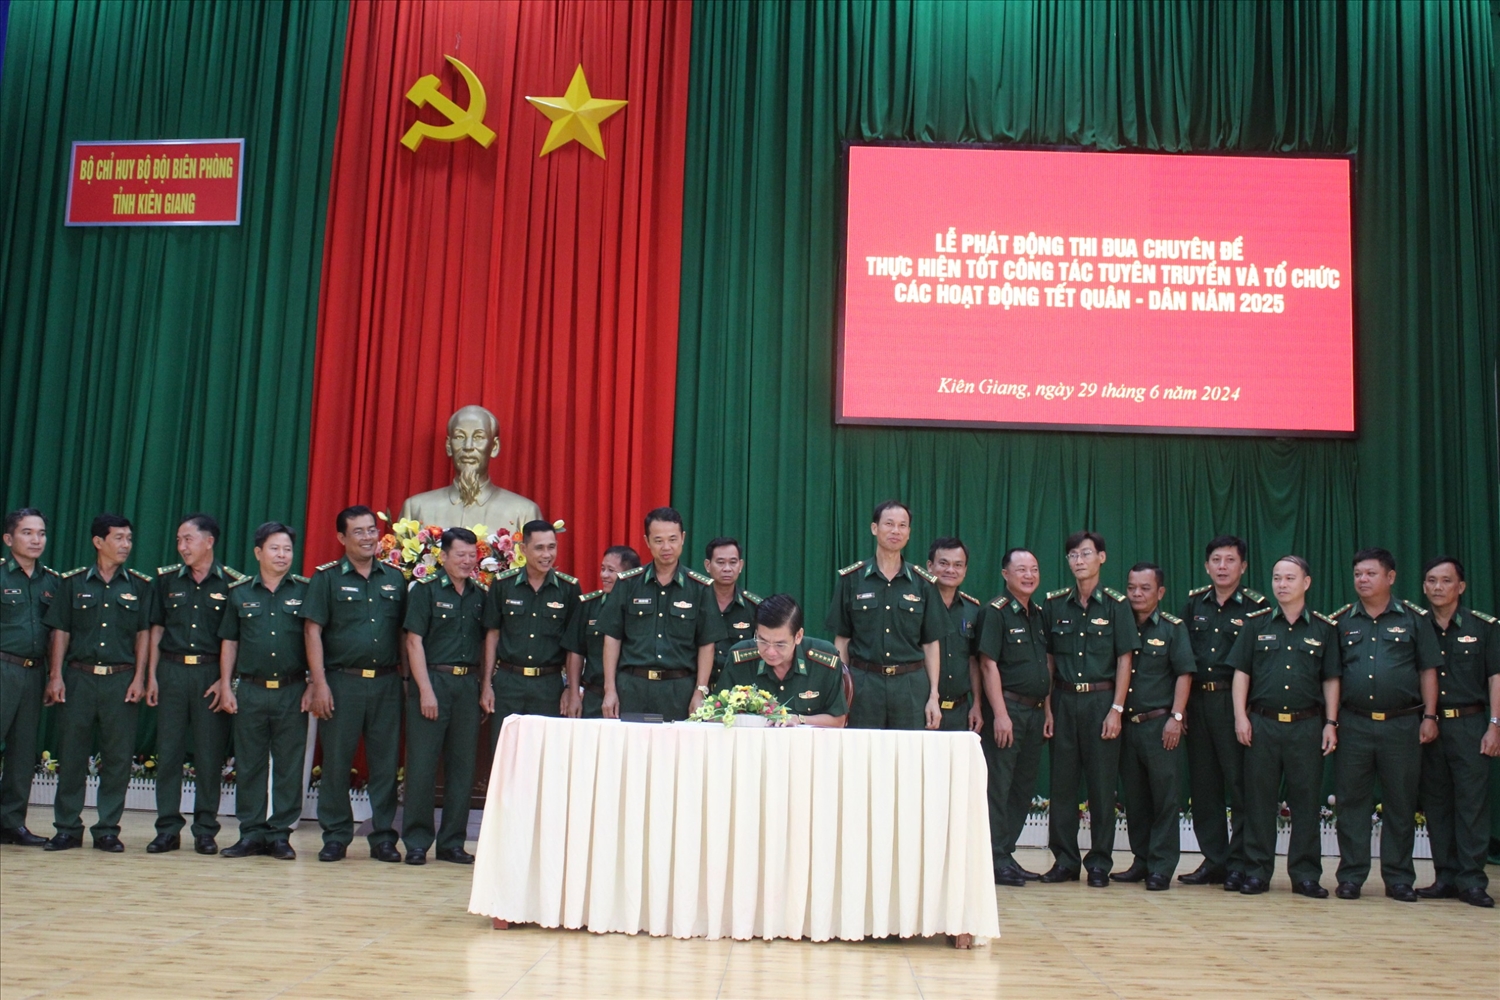 Đại tá Huỳnh Văn Đông, Chính ủy BĐBP tỉnh Kiên Giang ký xác nhận giao ước thi đua của các cơ quan, đơn vị trong lực lượng 